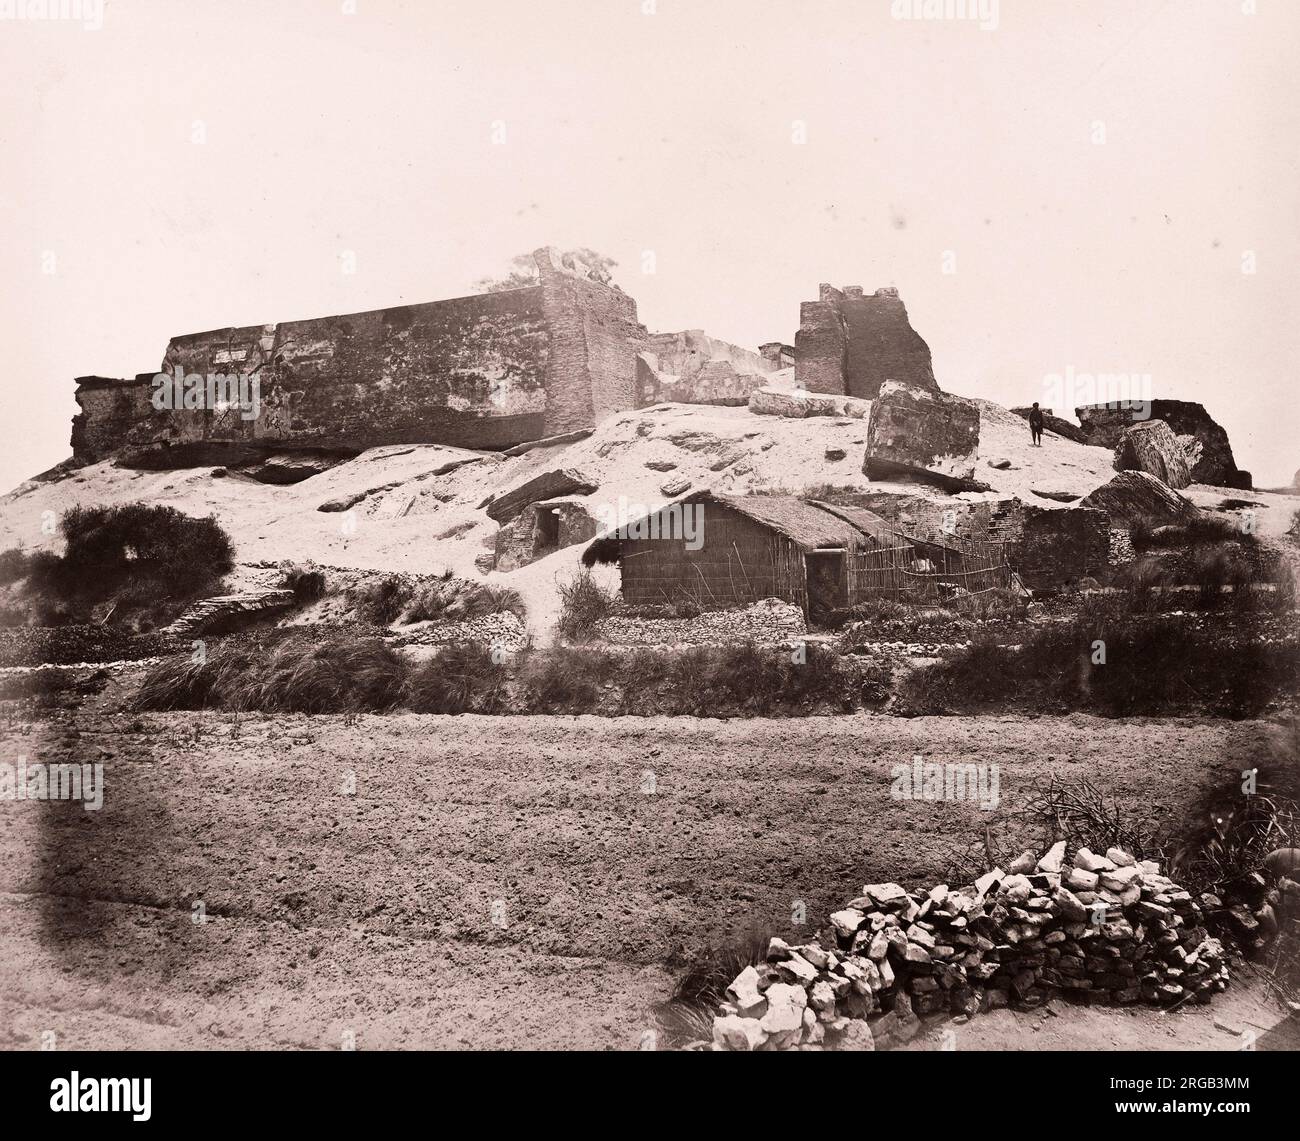 John Thomson (14 juin 1837 - 29 septembre 1921) photographe écossais, actif en Chine vers 1870, tiré d'un album de ses images : fort Zeelandia, Formosa, Taïwan Banque D'Images